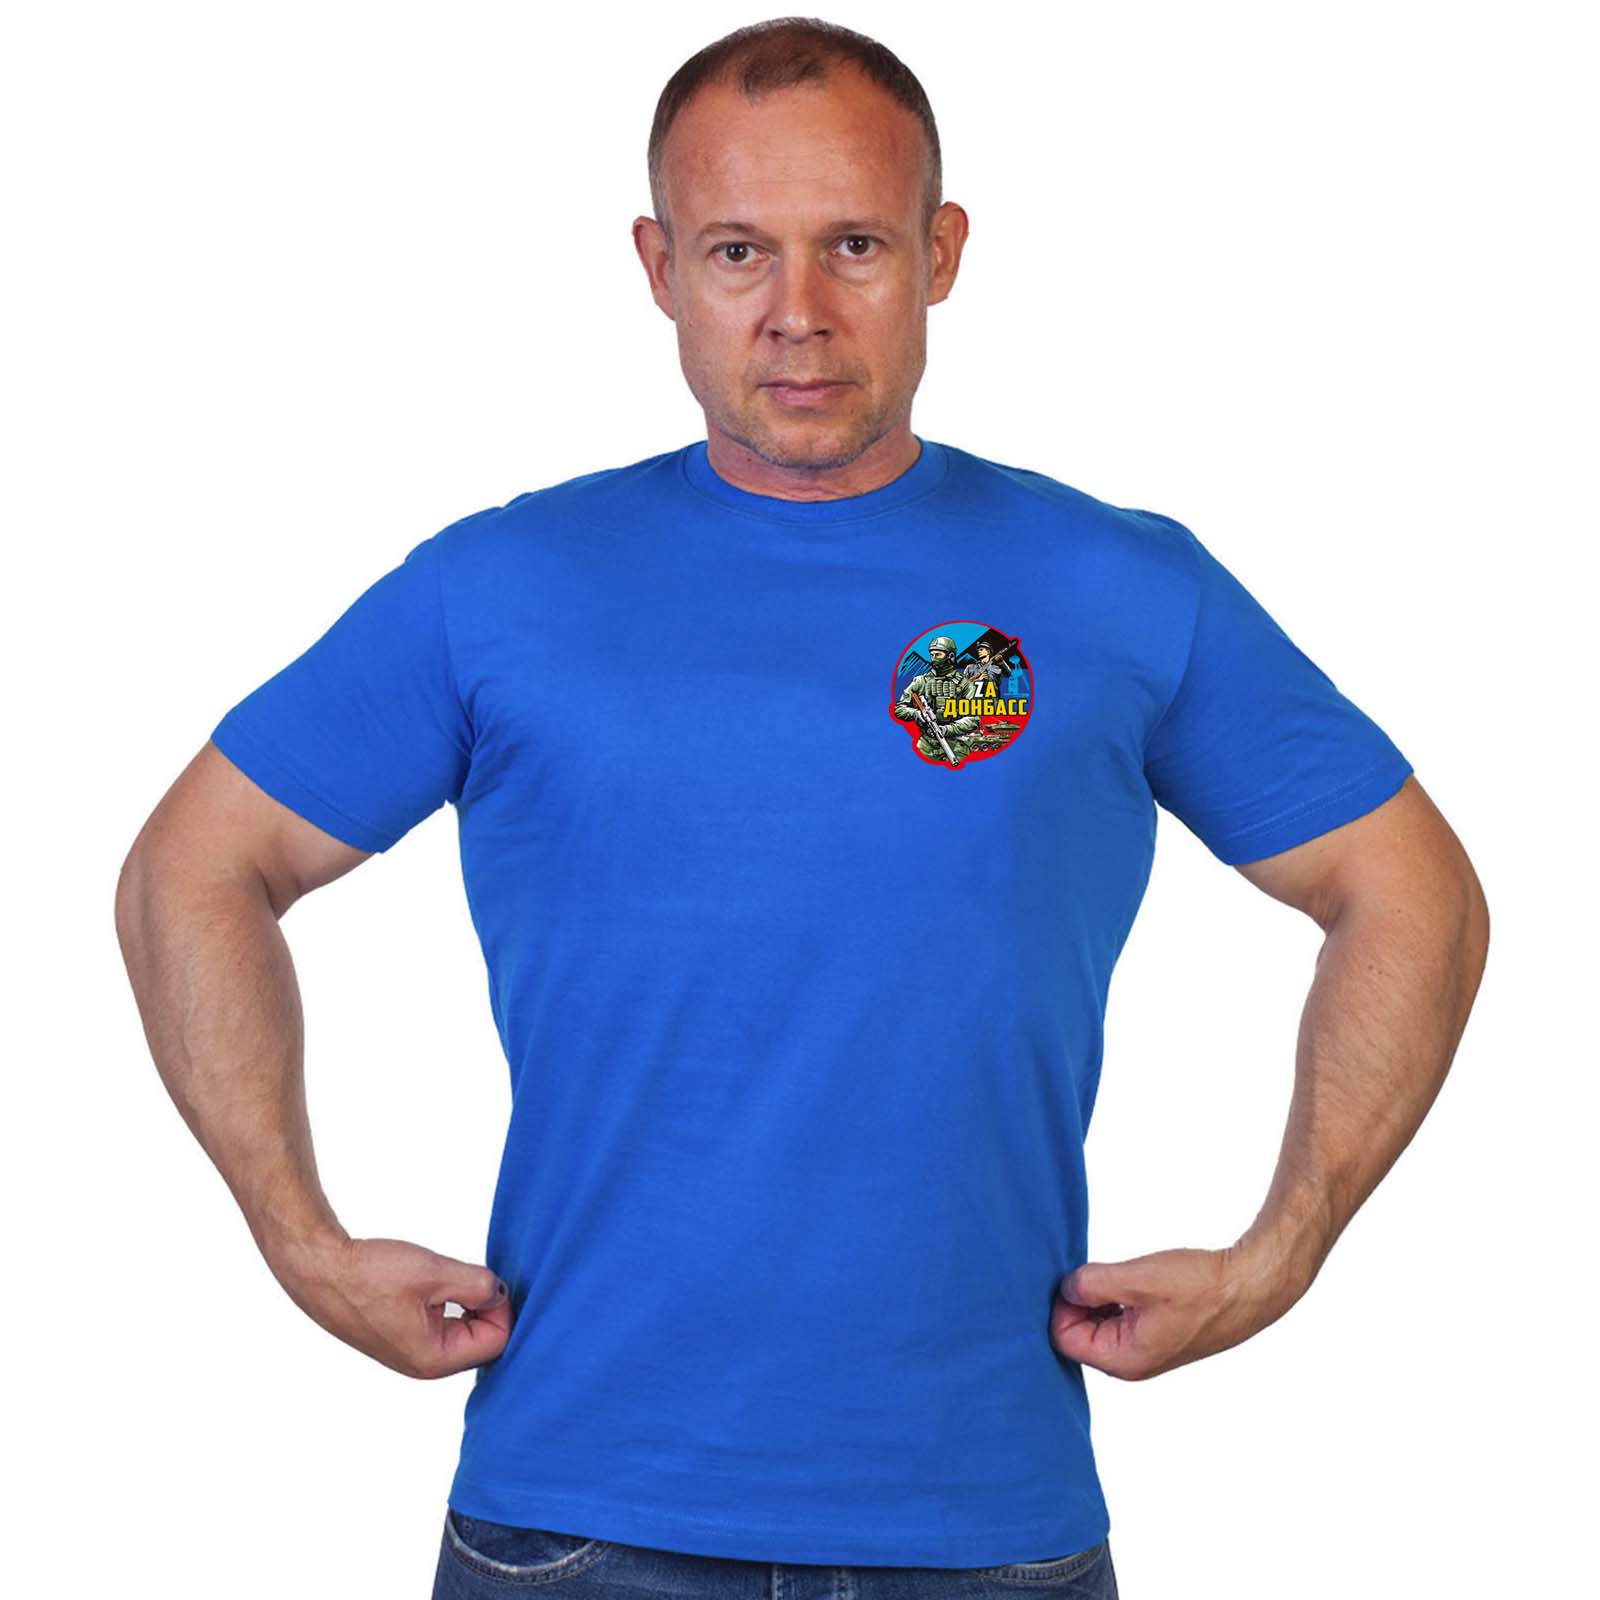 Васильковая футболка с термотрансфером "Zа Донбасс"